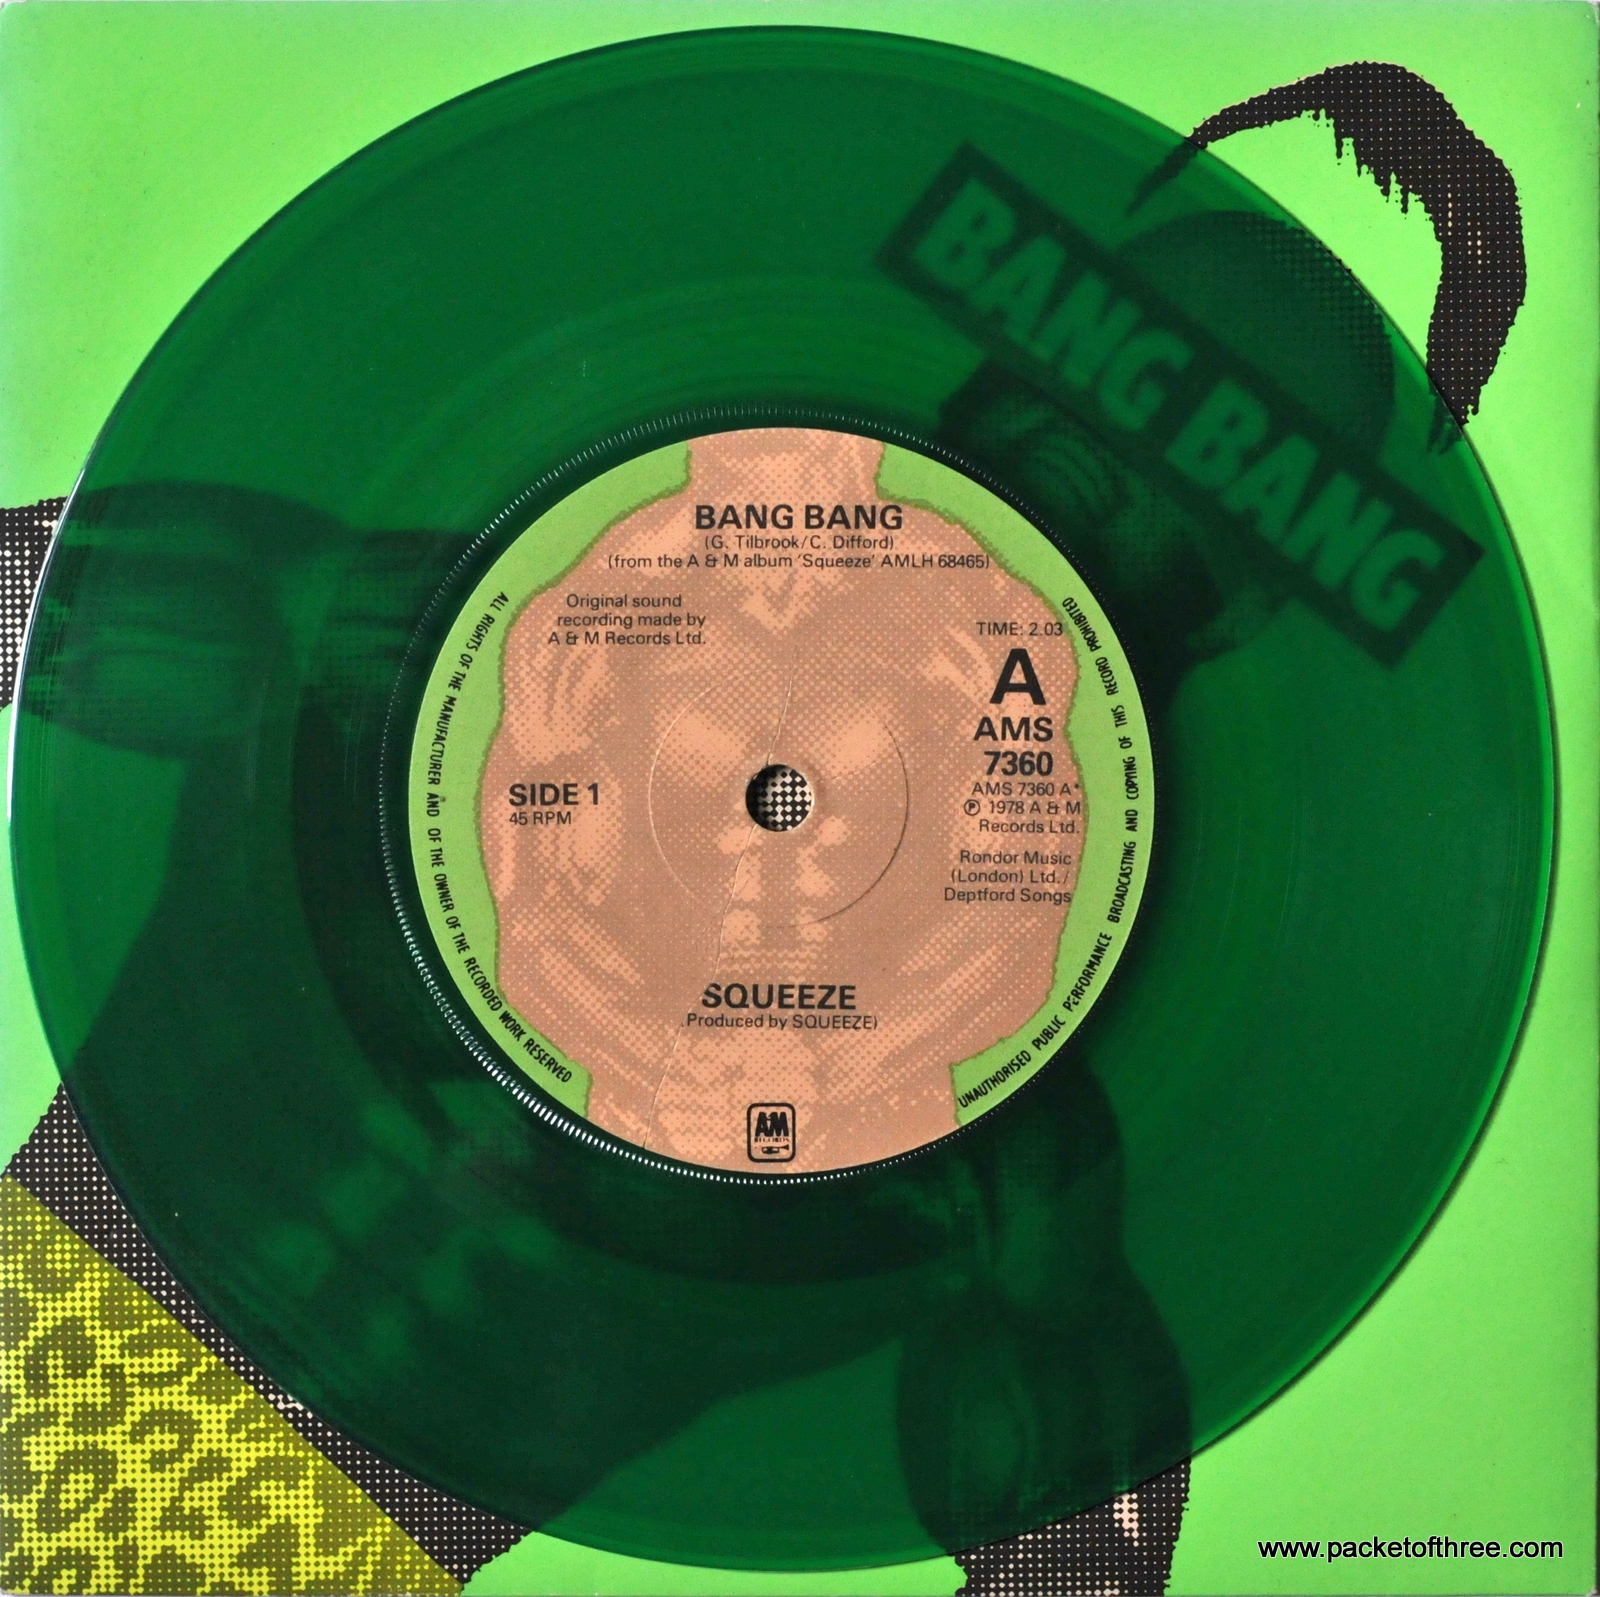 Bang Bang – UK – 7″ – picture sleeve - green vinyl